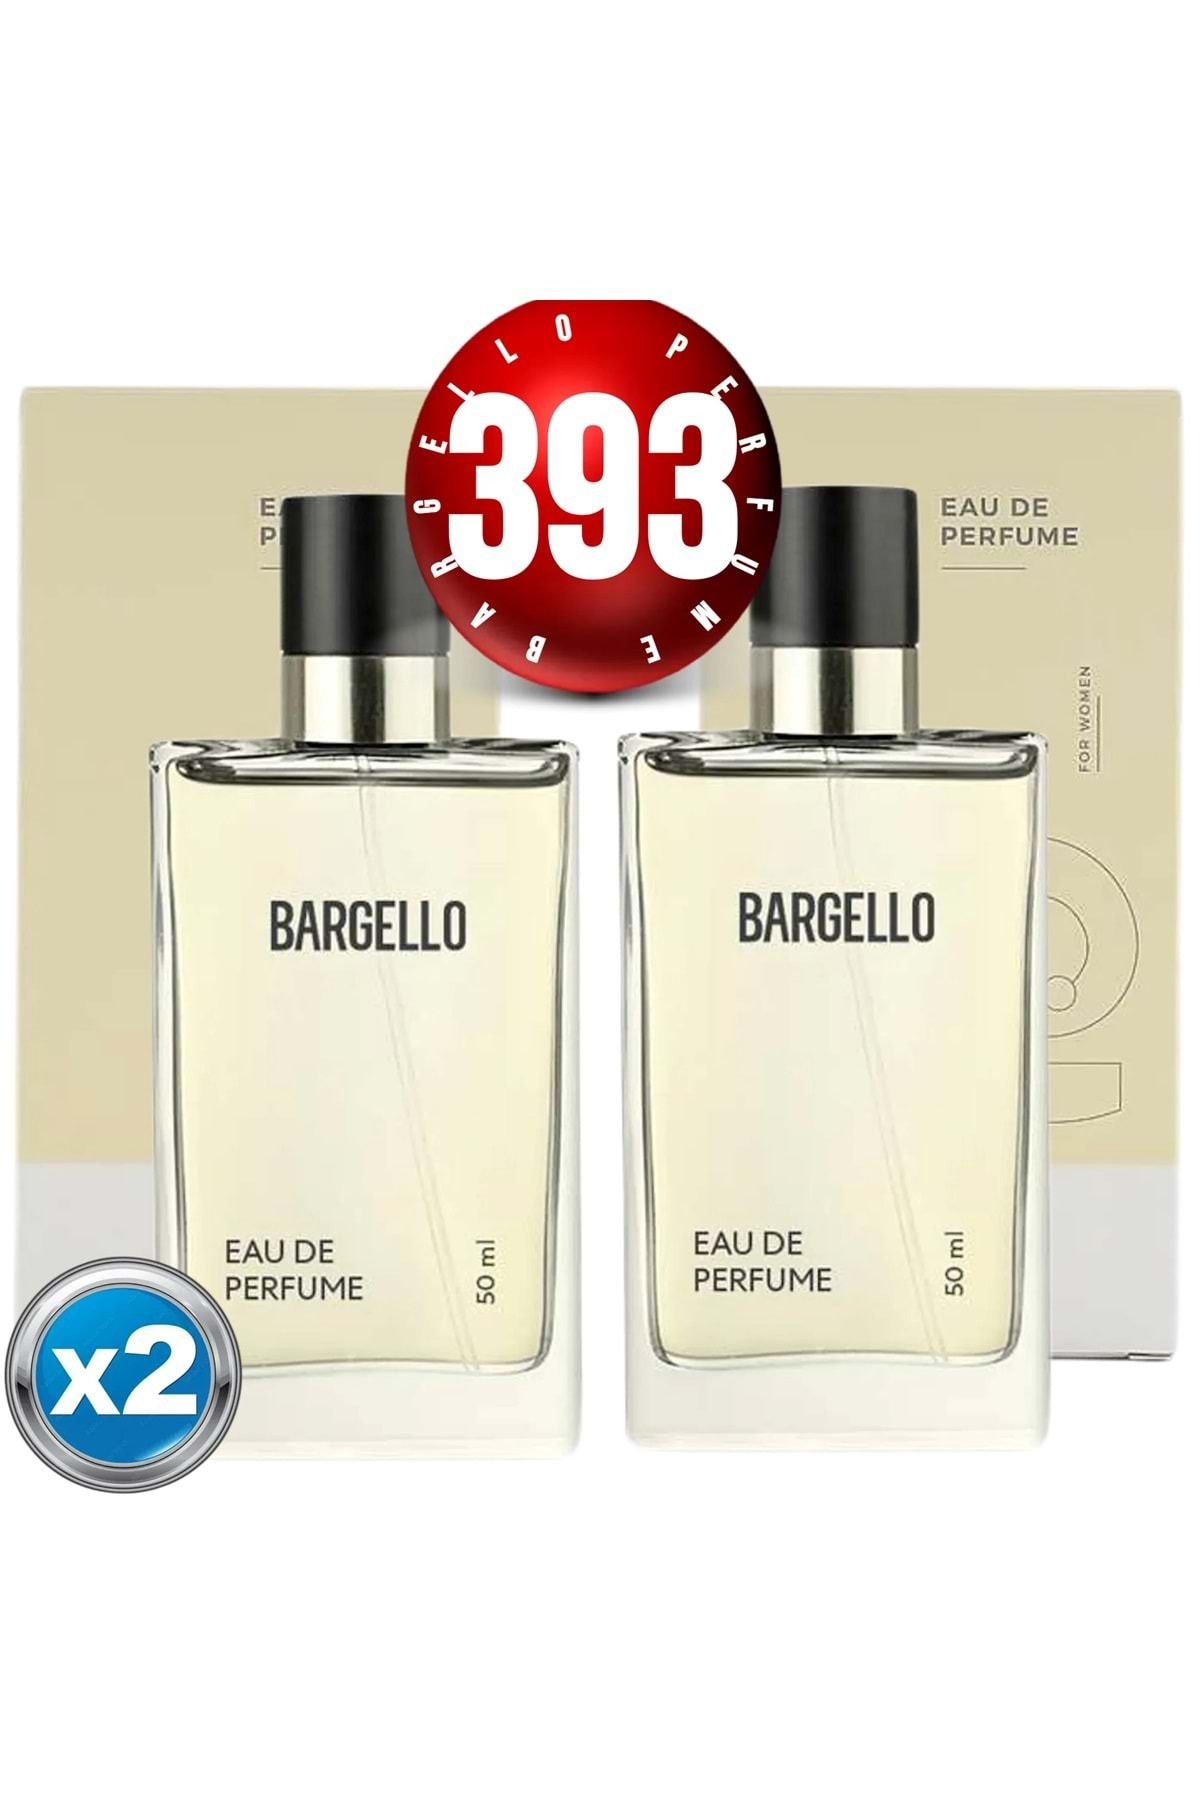 Bargello 393x2(2ADET) Kadın Parfüm Floral 50 ml Edp